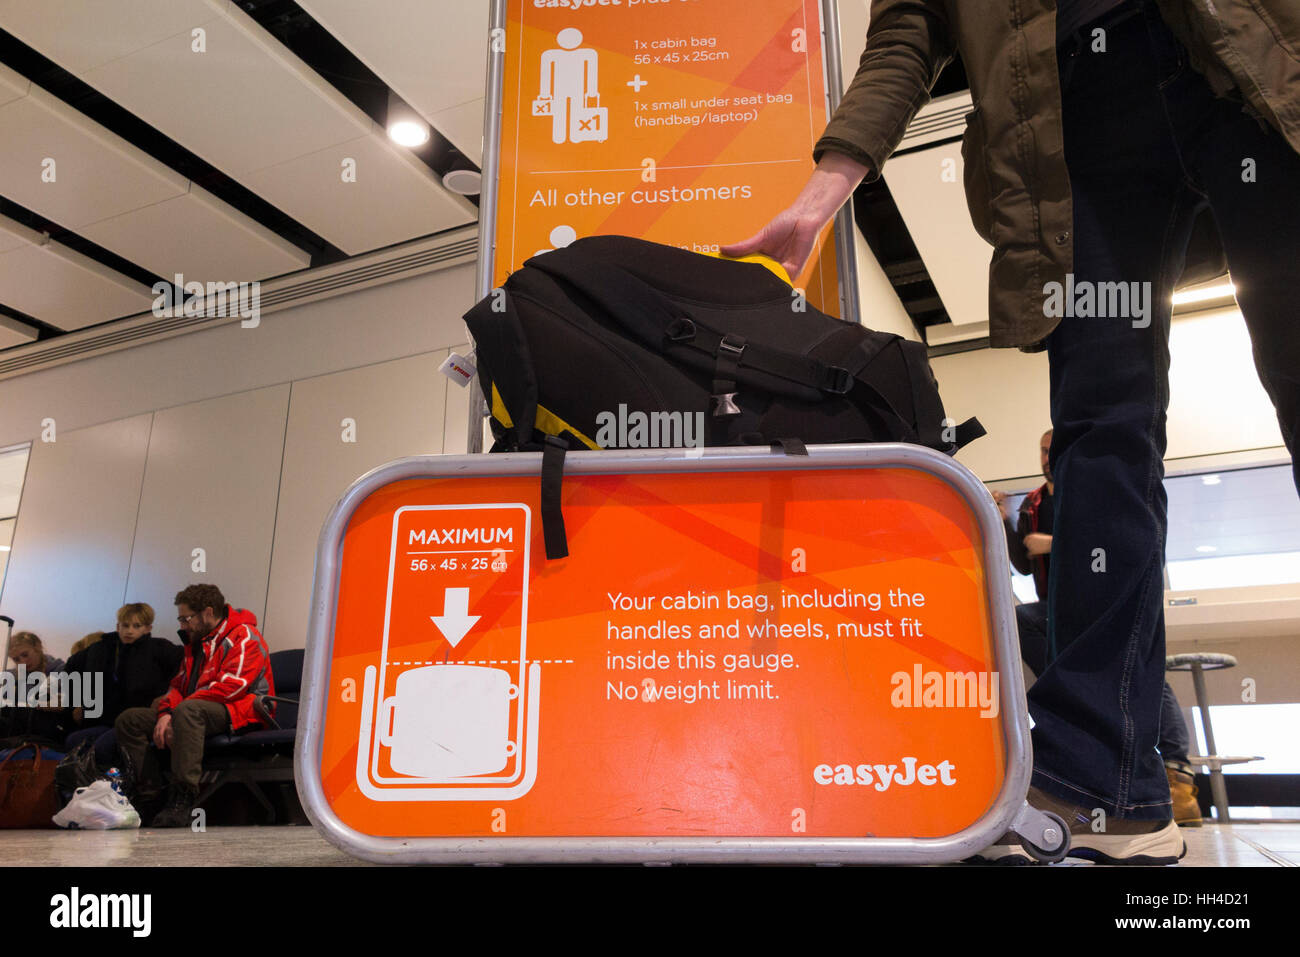 Jaula de equipaje de mano imágenes alta resolución Alamy